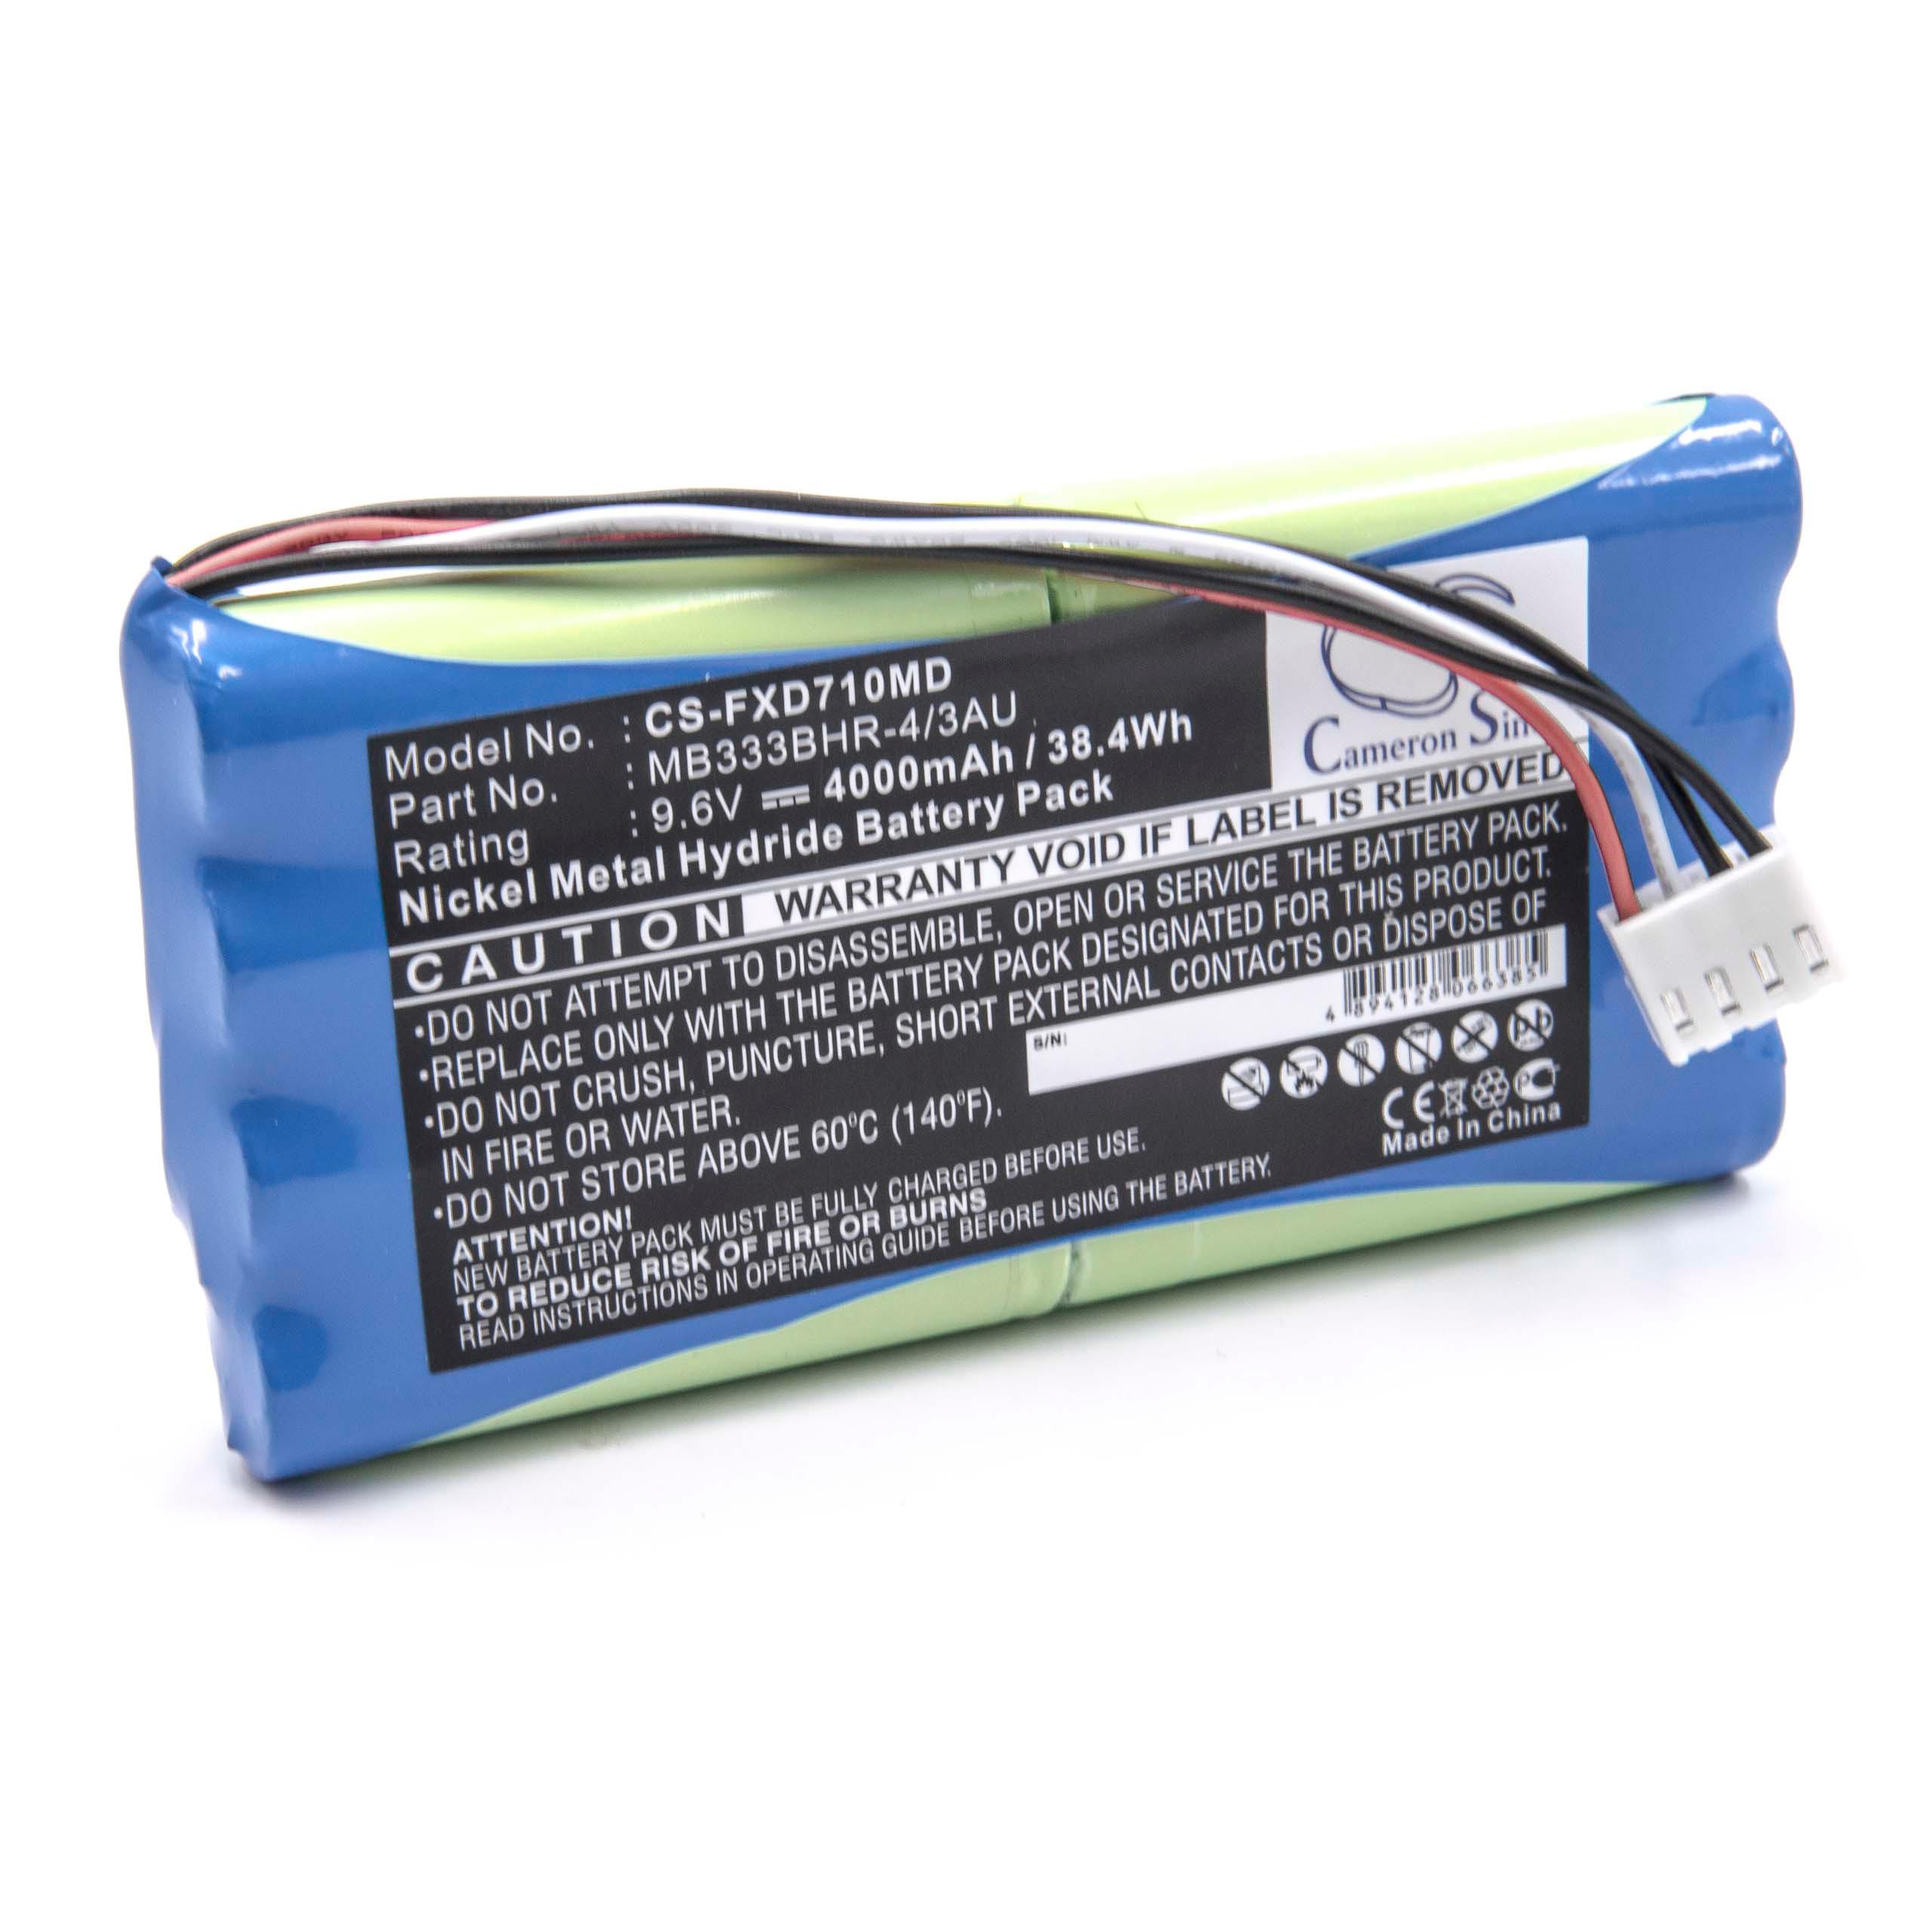 Batterie remplace Fukuda MB333BHR-4/3AU, 8PH-4/3A 3700-H-J18 pour appareil médical - 4000mAh 9,6V NiMH